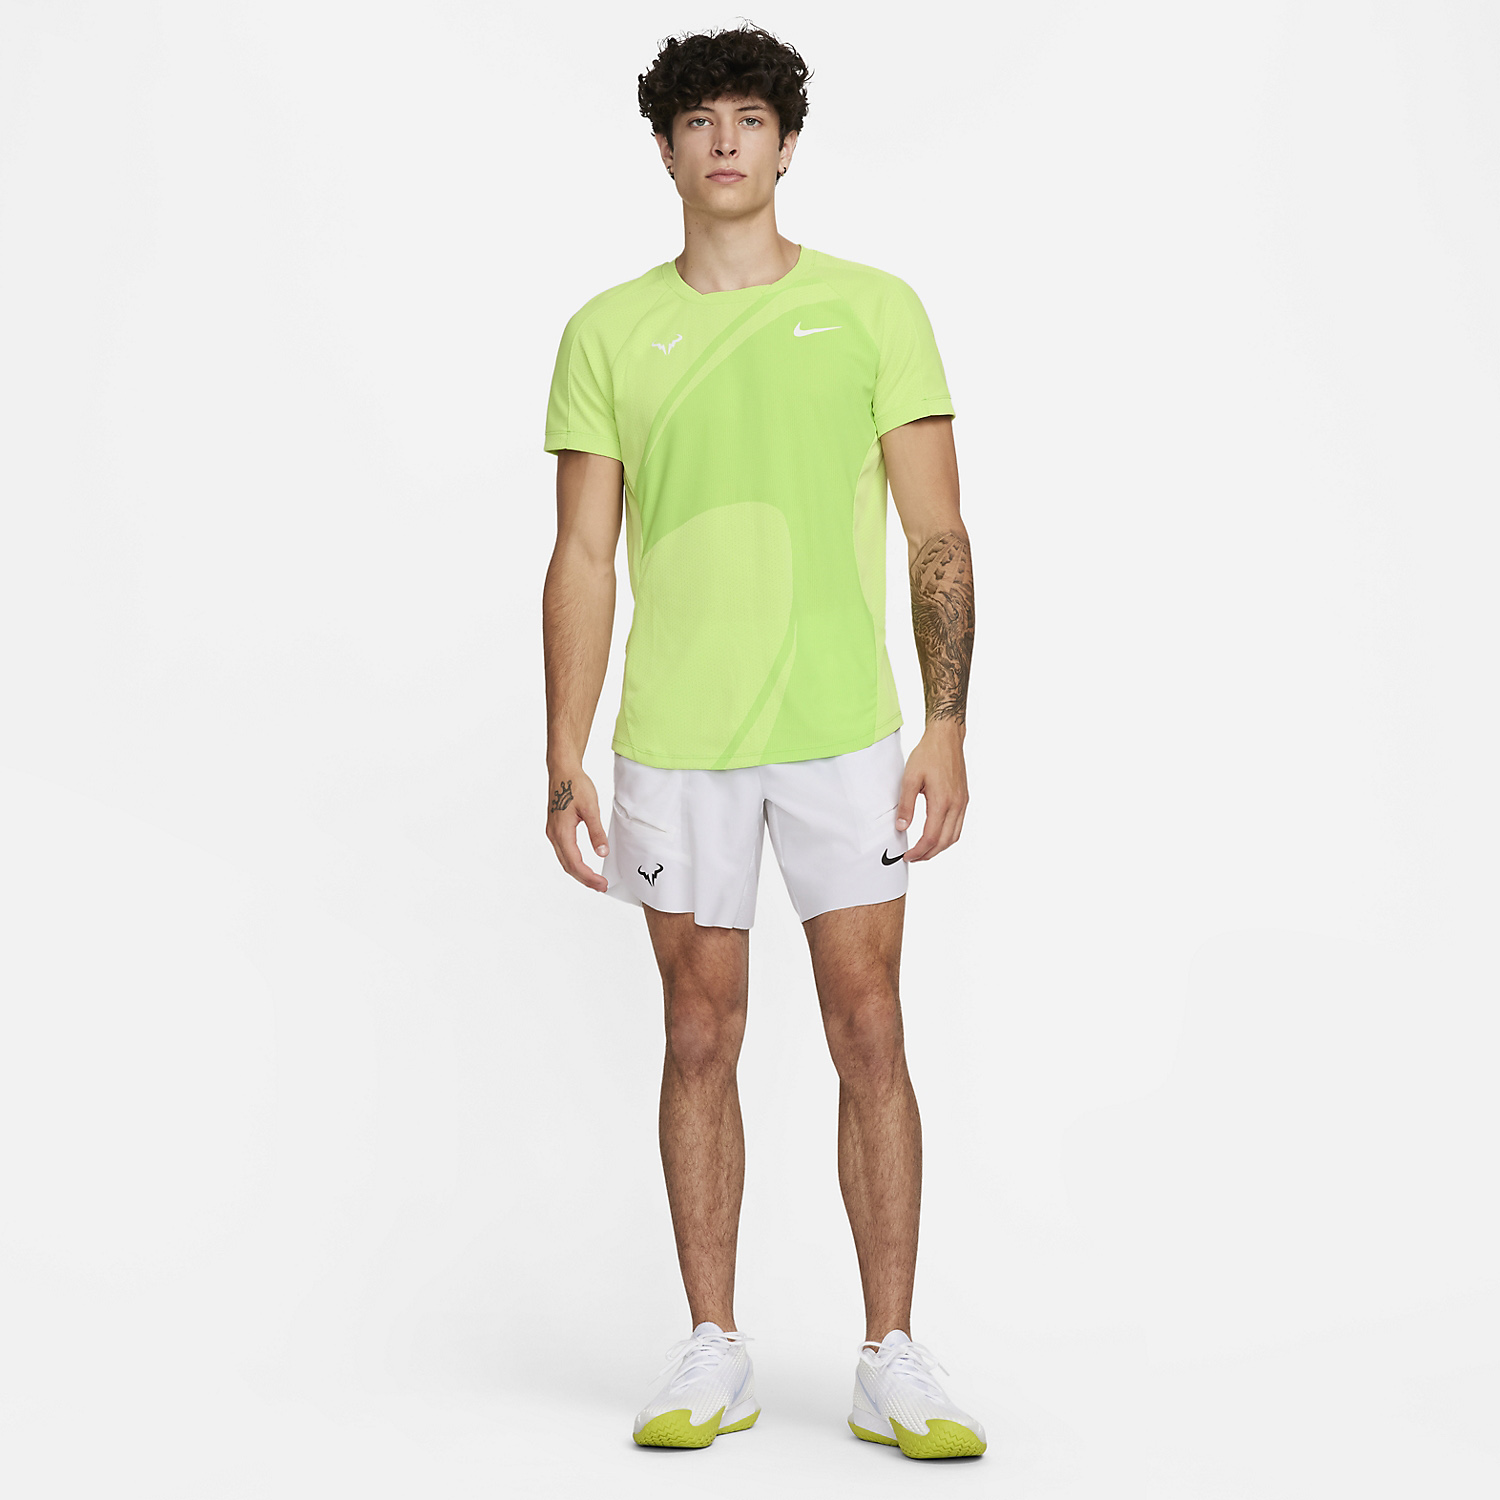 Nike Rafa Dri-FIT ADV Camiseta - Action Green/White